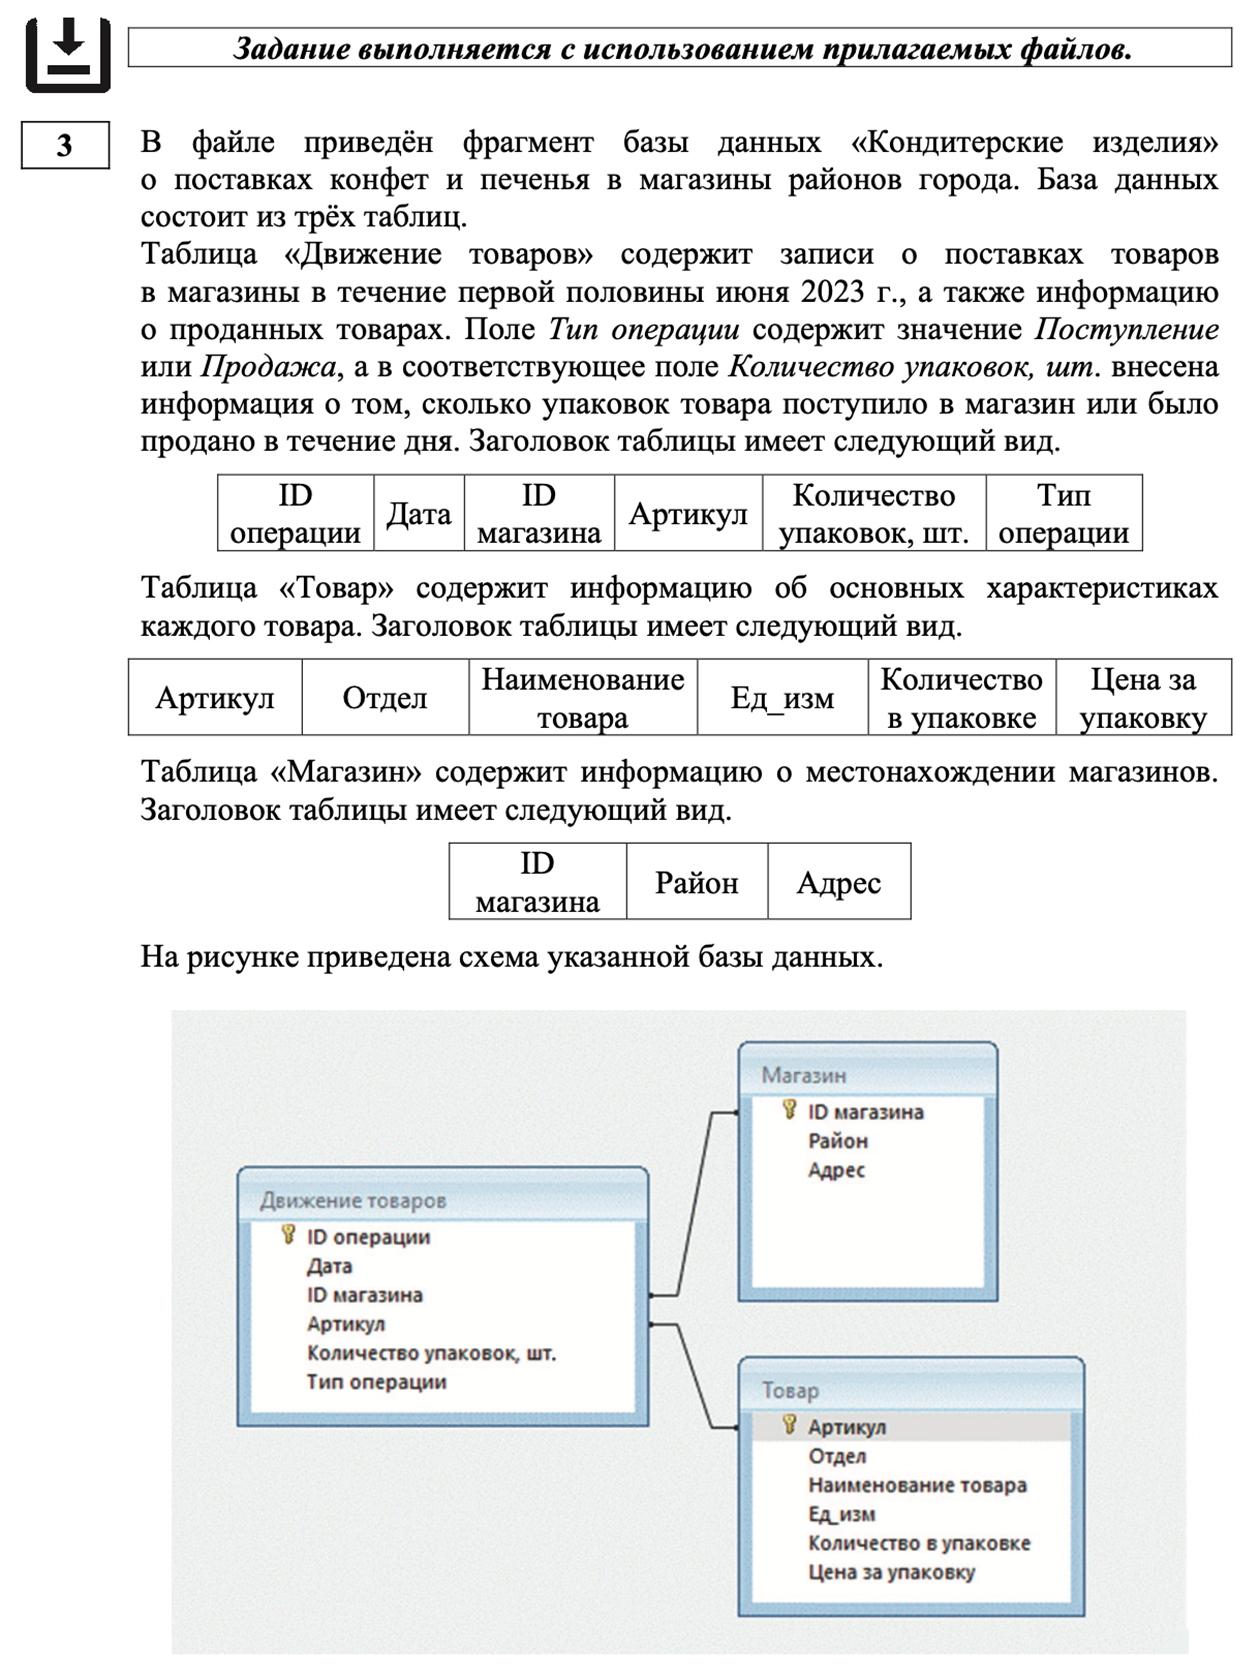 Задание на обработку нескольких баз данных. Источник: fipi.ru